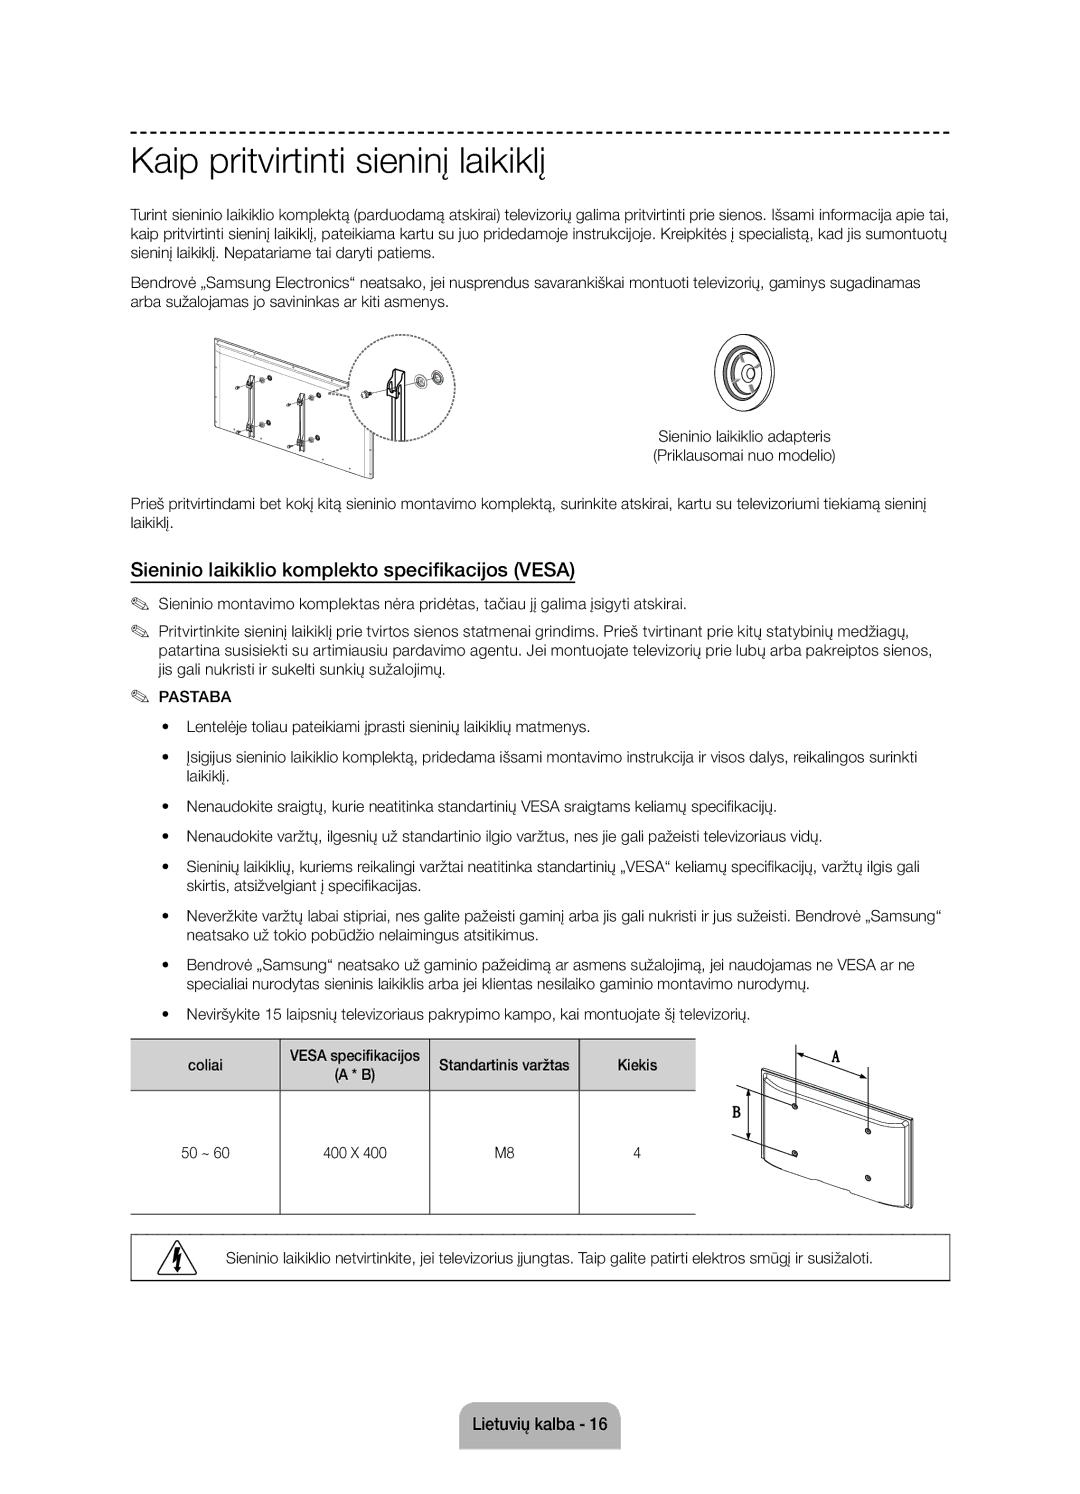 Samsung UE55J6100AWXZF manual Kaip pritvirtinti sieninį laikiklį, Sieninio laikiklio komplekto specifikacijos Vesa 